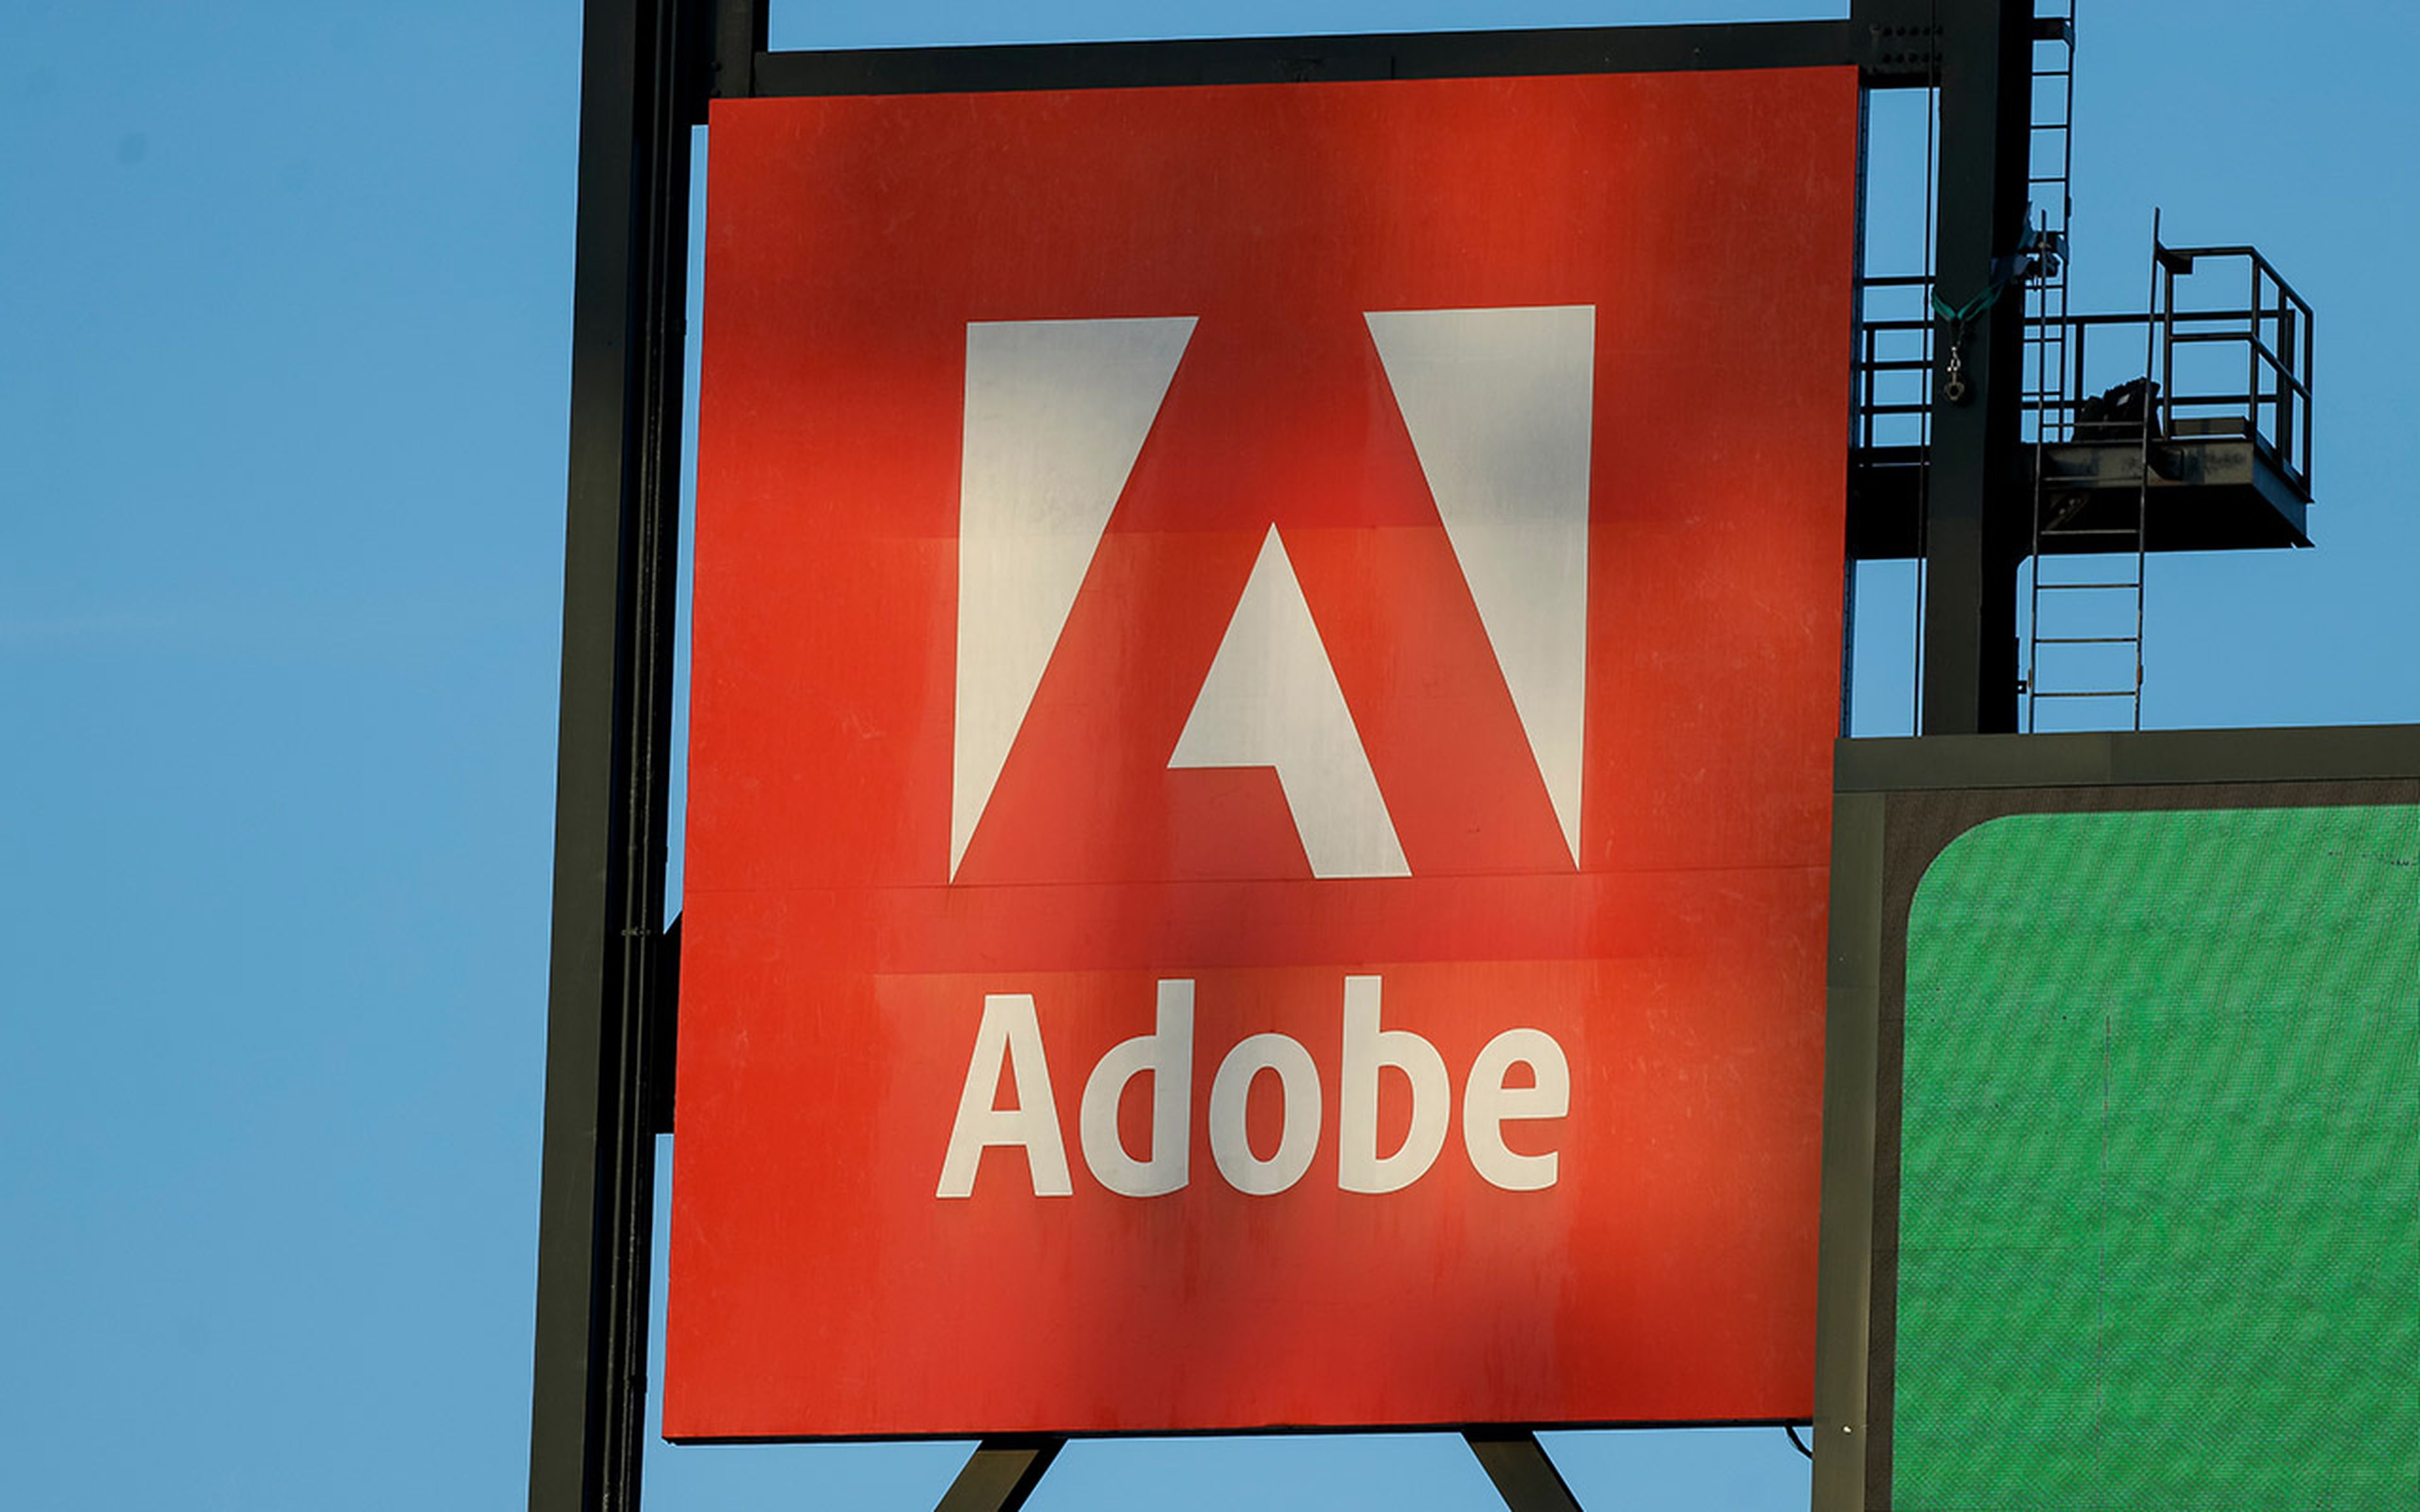 Adobe billboard at a baseball park.